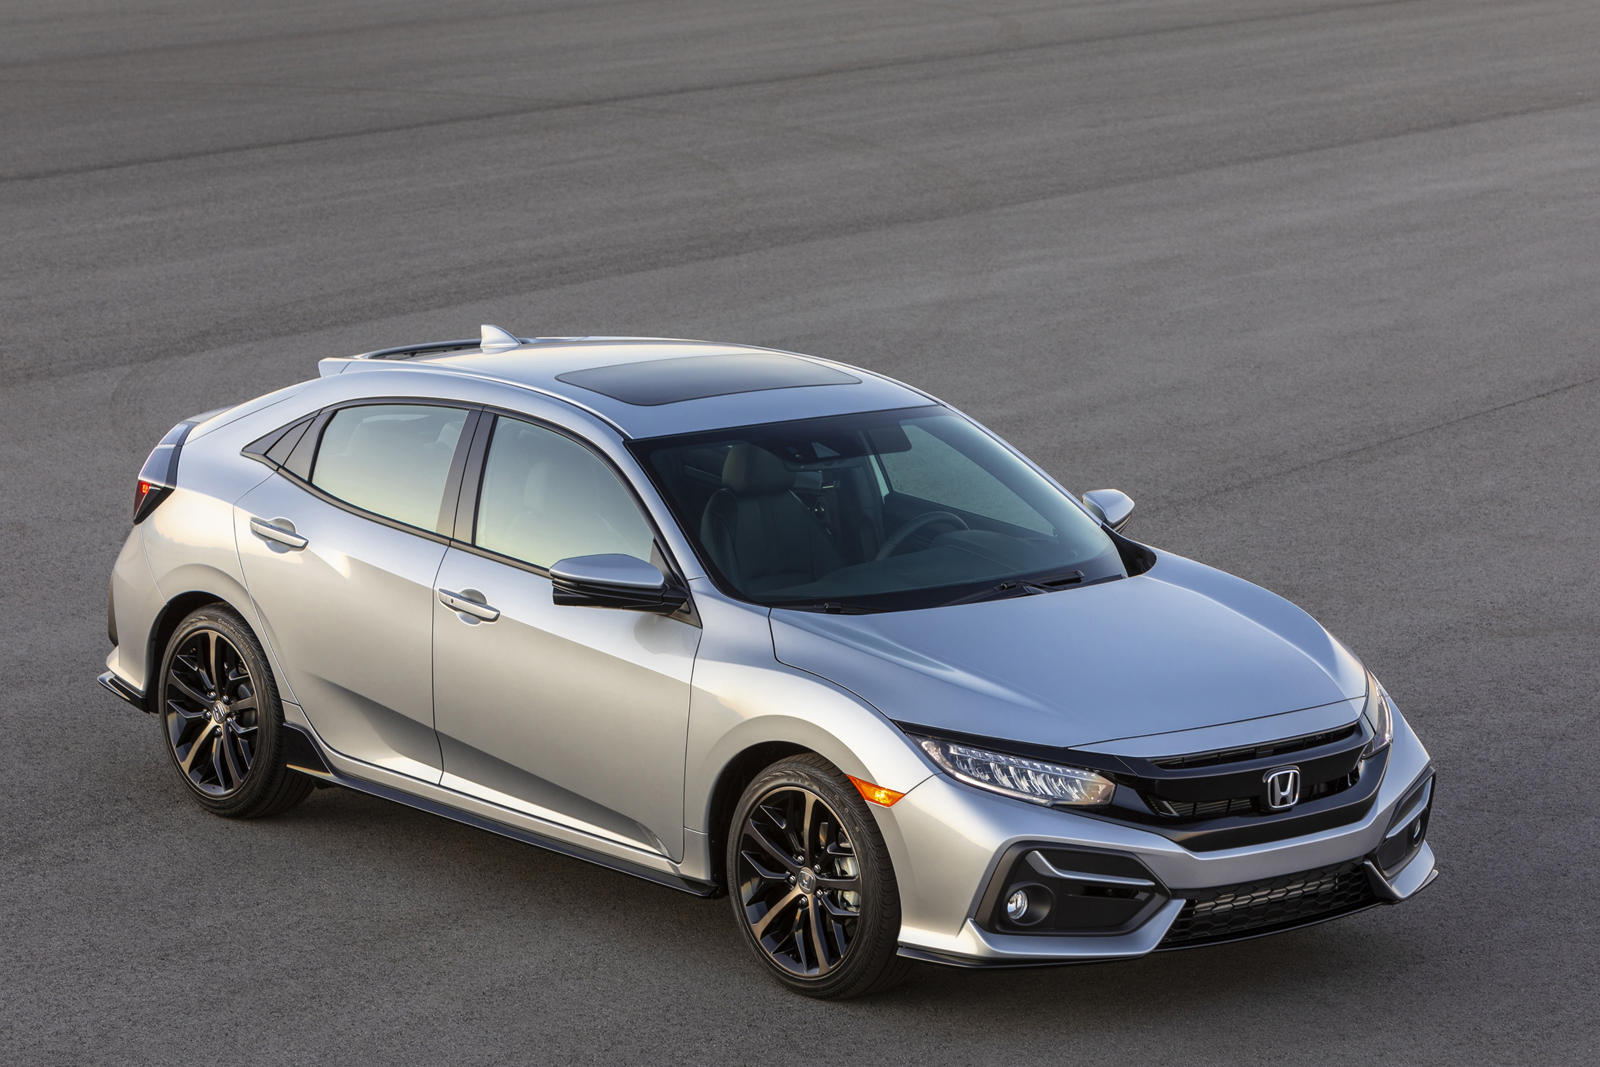 2021 Honda Civic Lx Features